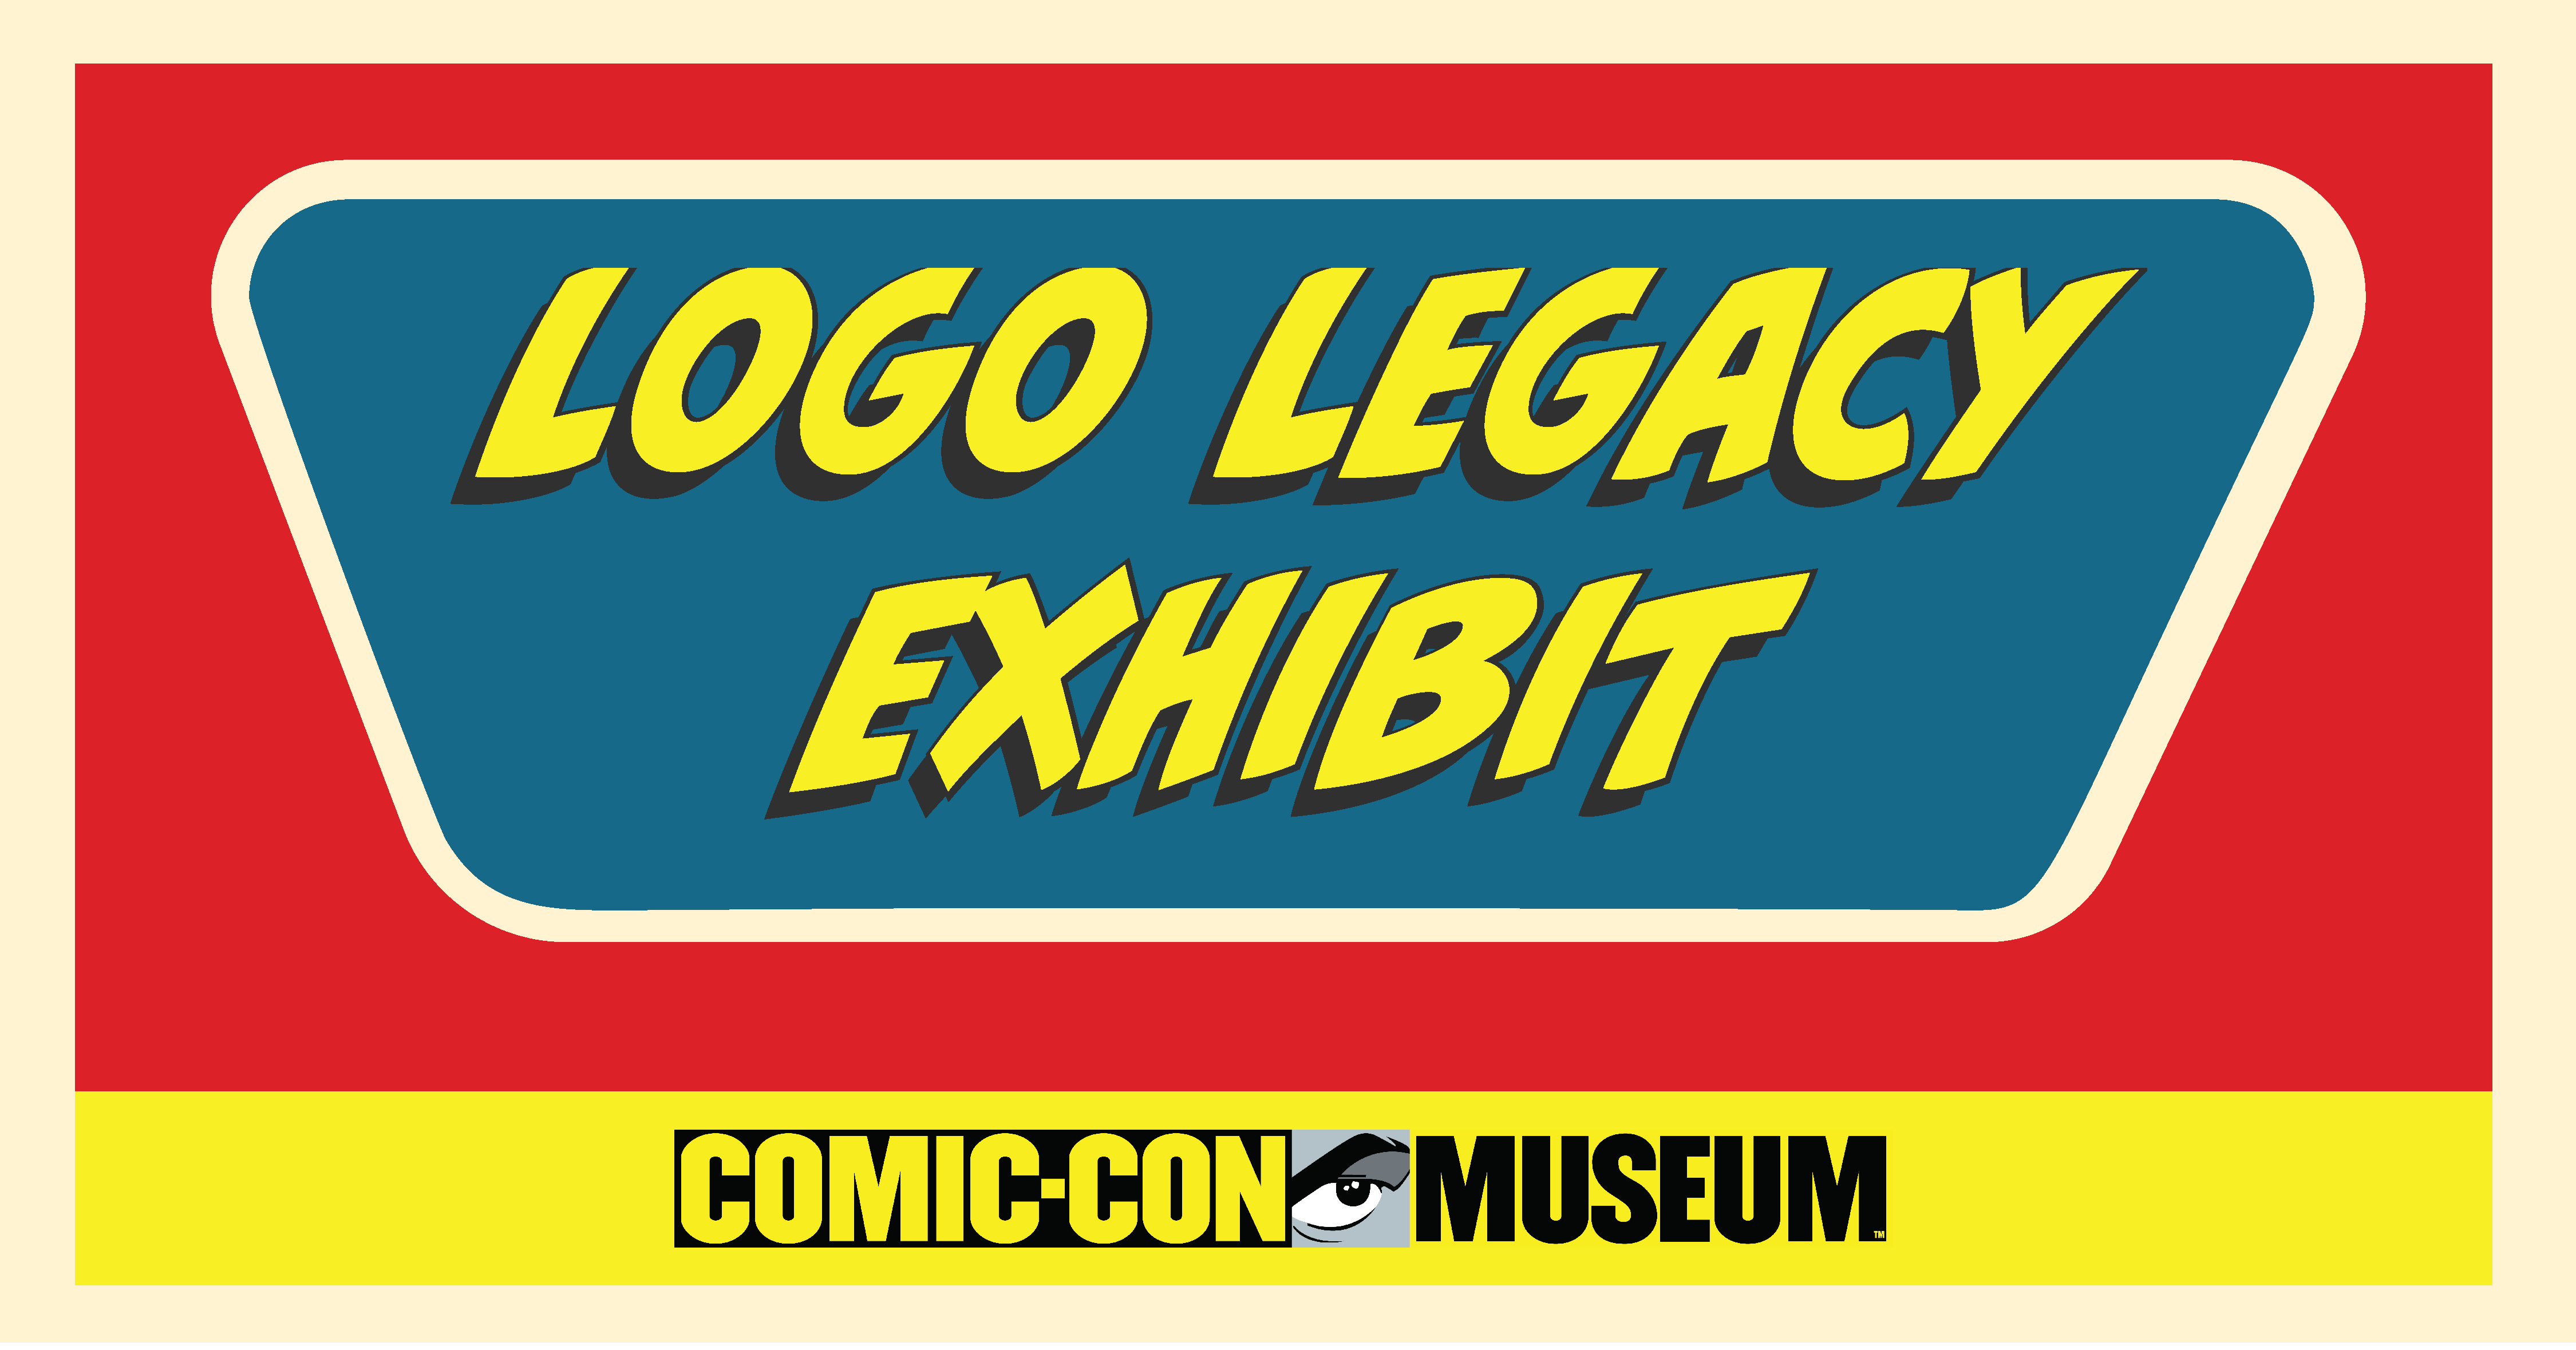 CCM_Logo Legacy image.